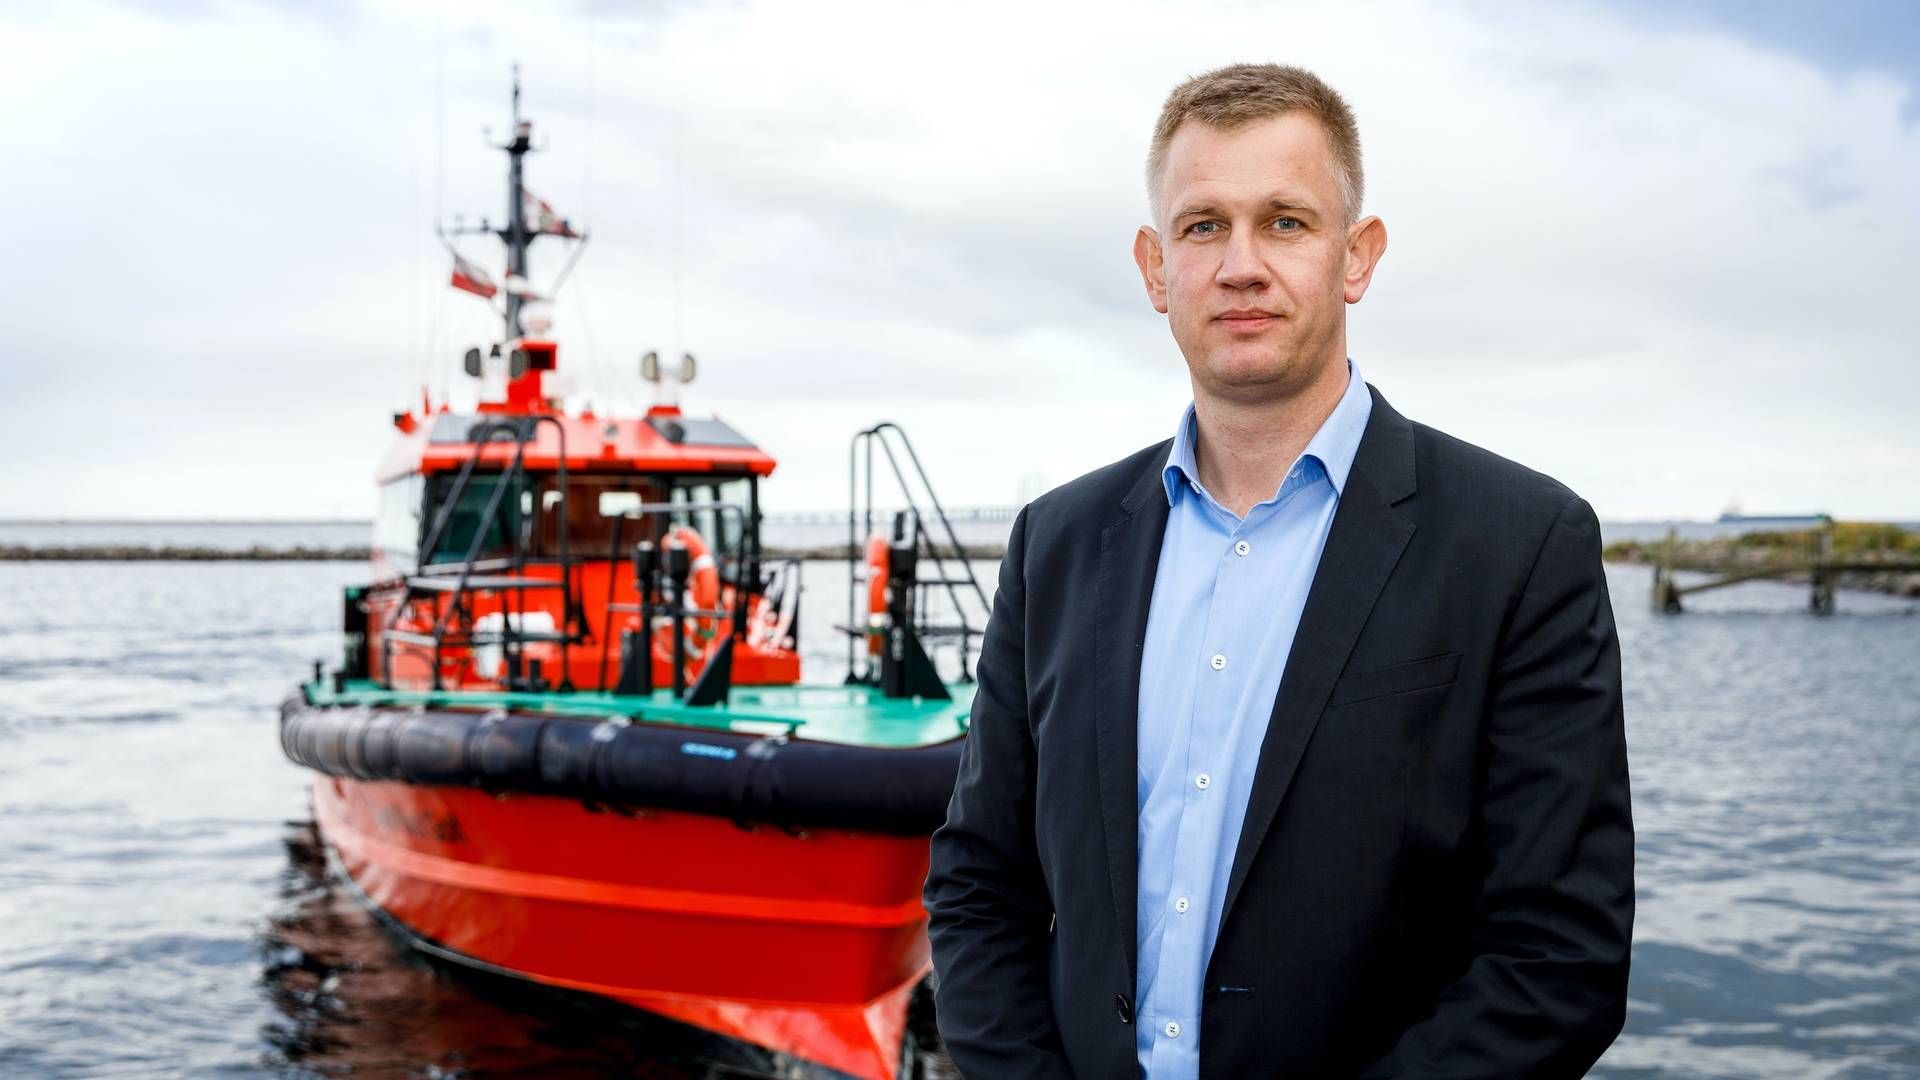 (ARKIV) En ny undtagelse i EU's sanktionskamp kan være en fordel af danske lodsningsselskaber som Danpilot, vurderer adm. direktør Erik Merkes Nielsen. | Foto: Pr-foto